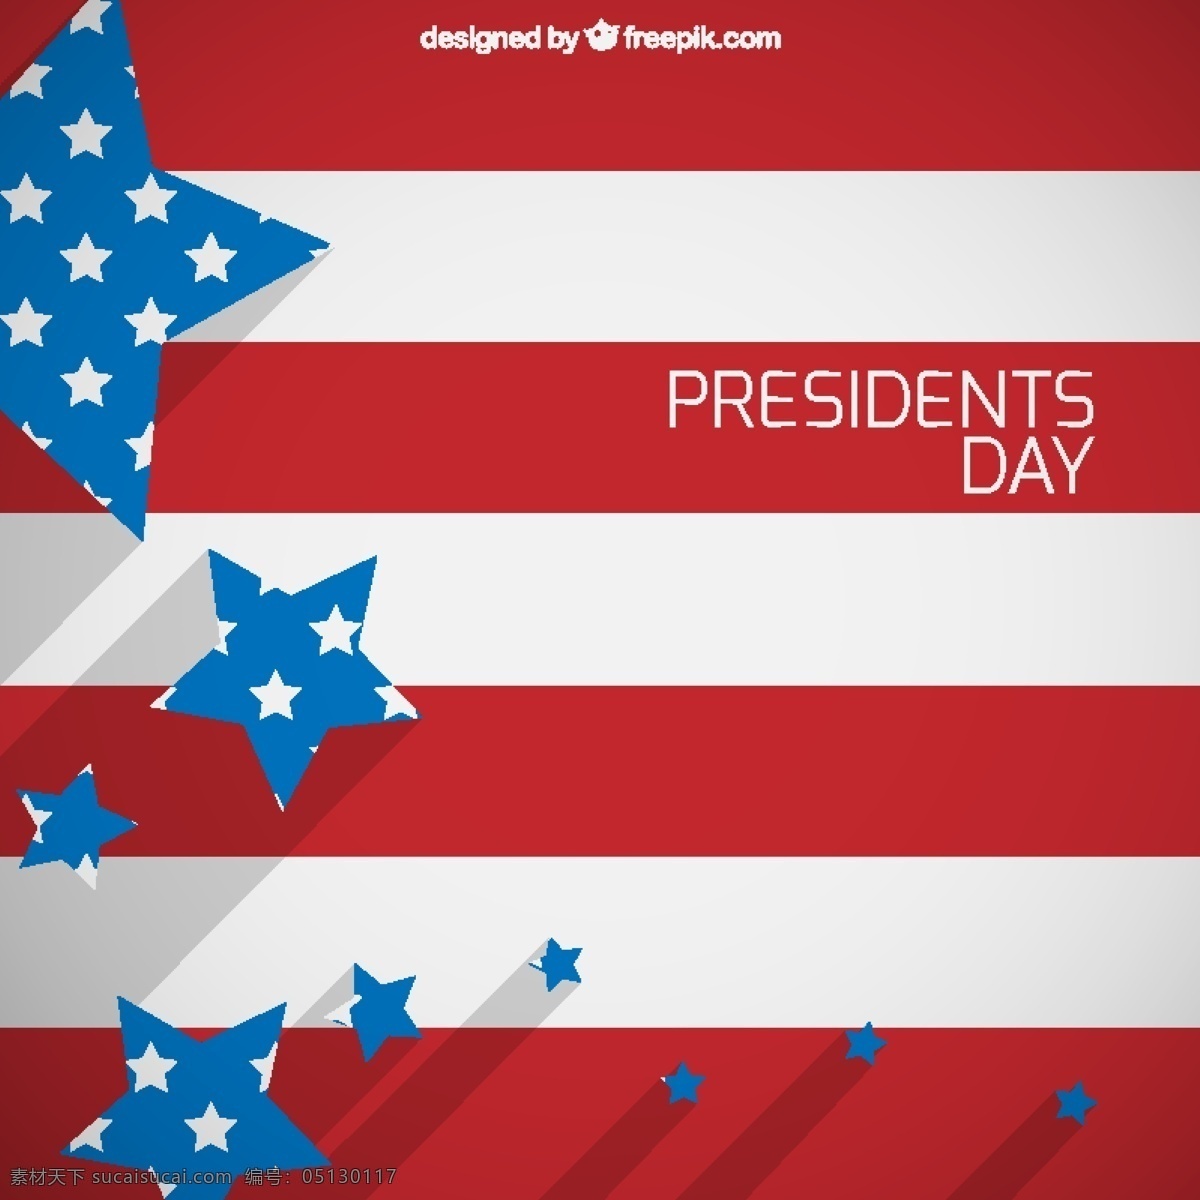 总统日旗背景 背景 国旗 星星 庆祝 节日 美国 自由 一天 选举 政府 爱国 政治 总统 民主 国家 爱国者 红色